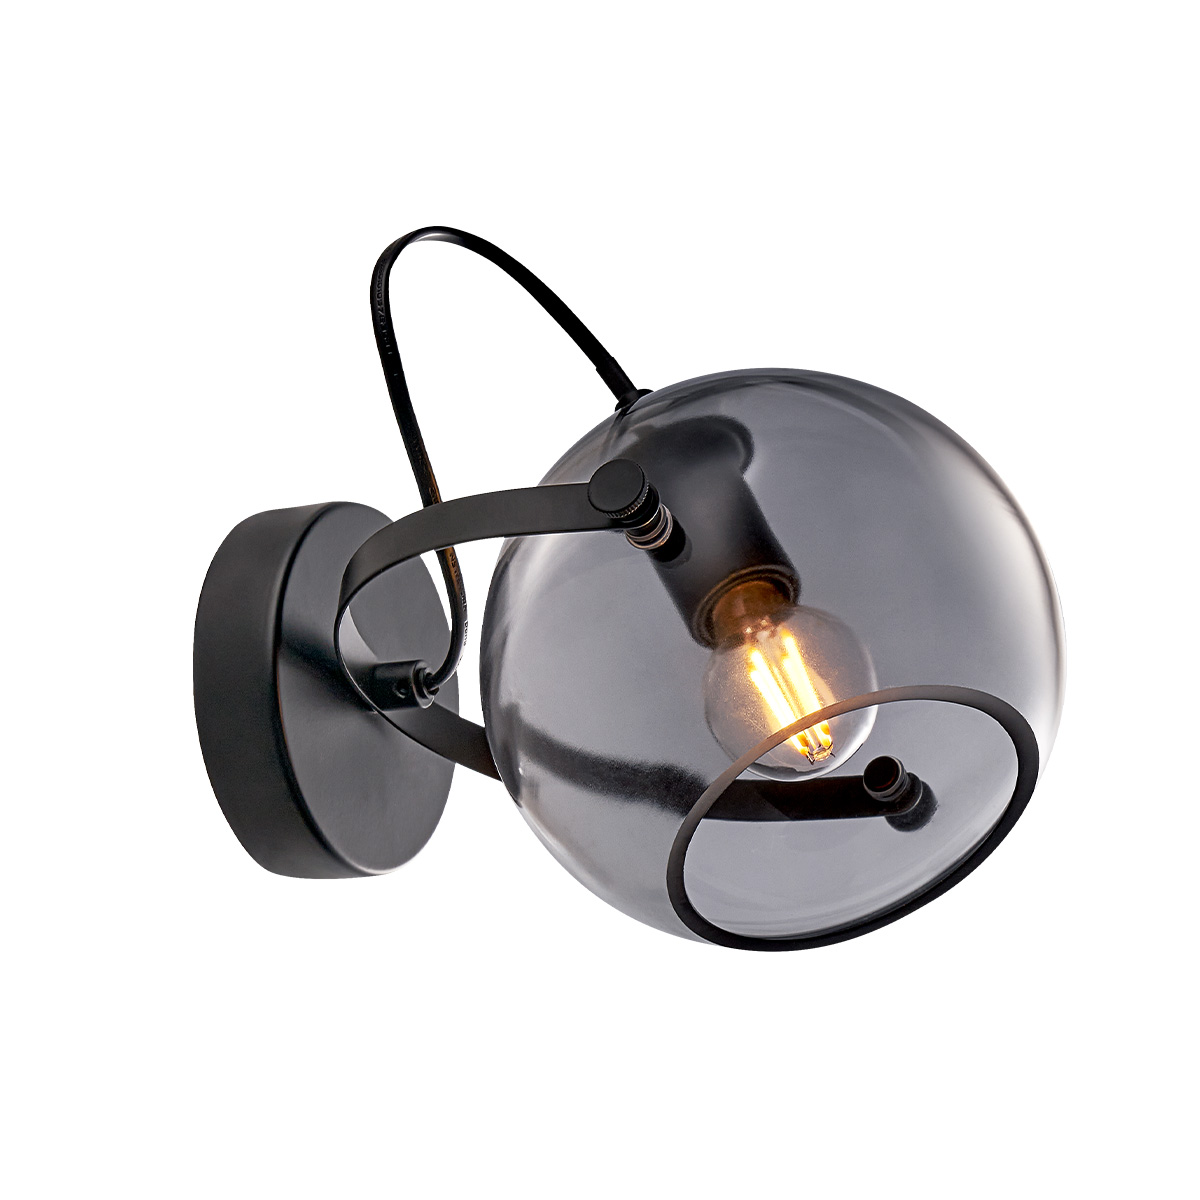 Tangla lighting - TLW7408-01SB - LED Wall lamp 1 Light - metal + glass - sand black + smoke - night - E14